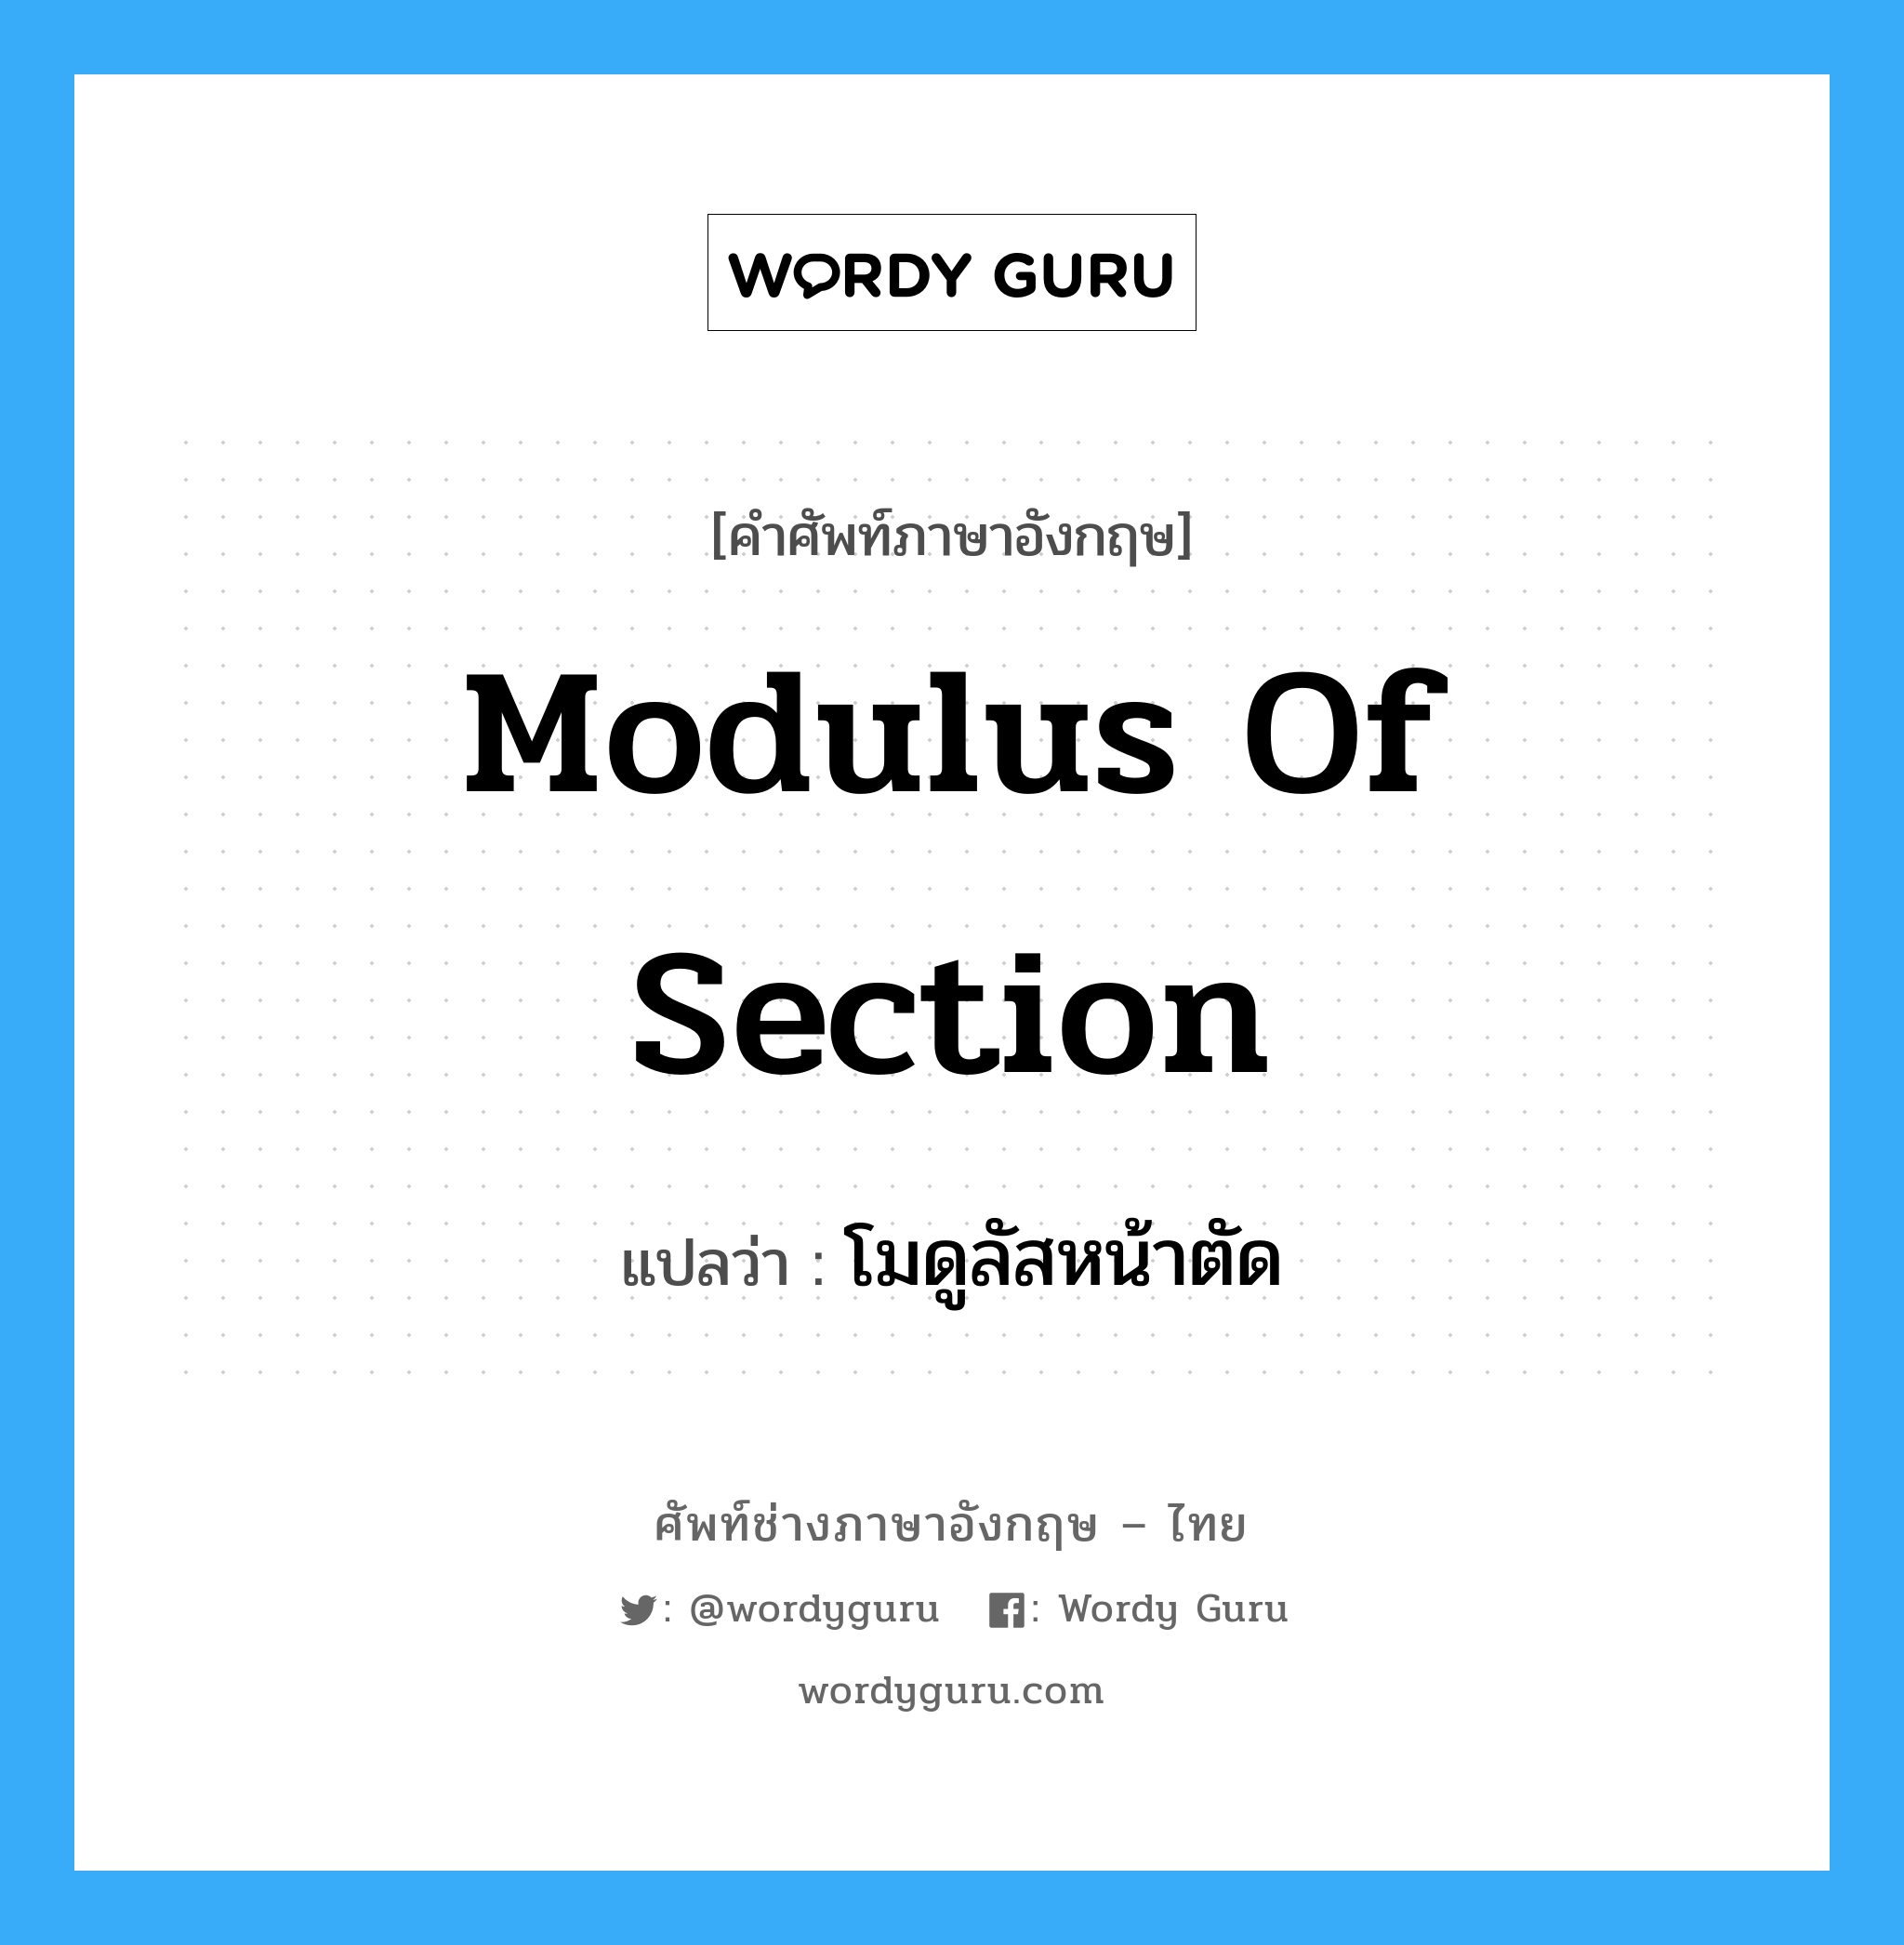 โมดูลัสหน้าตัด ภาษาอังกฤษ?, คำศัพท์ช่างภาษาอังกฤษ - ไทย โมดูลัสหน้าตัด คำศัพท์ภาษาอังกฤษ โมดูลัสหน้าตัด แปลว่า modulus of section